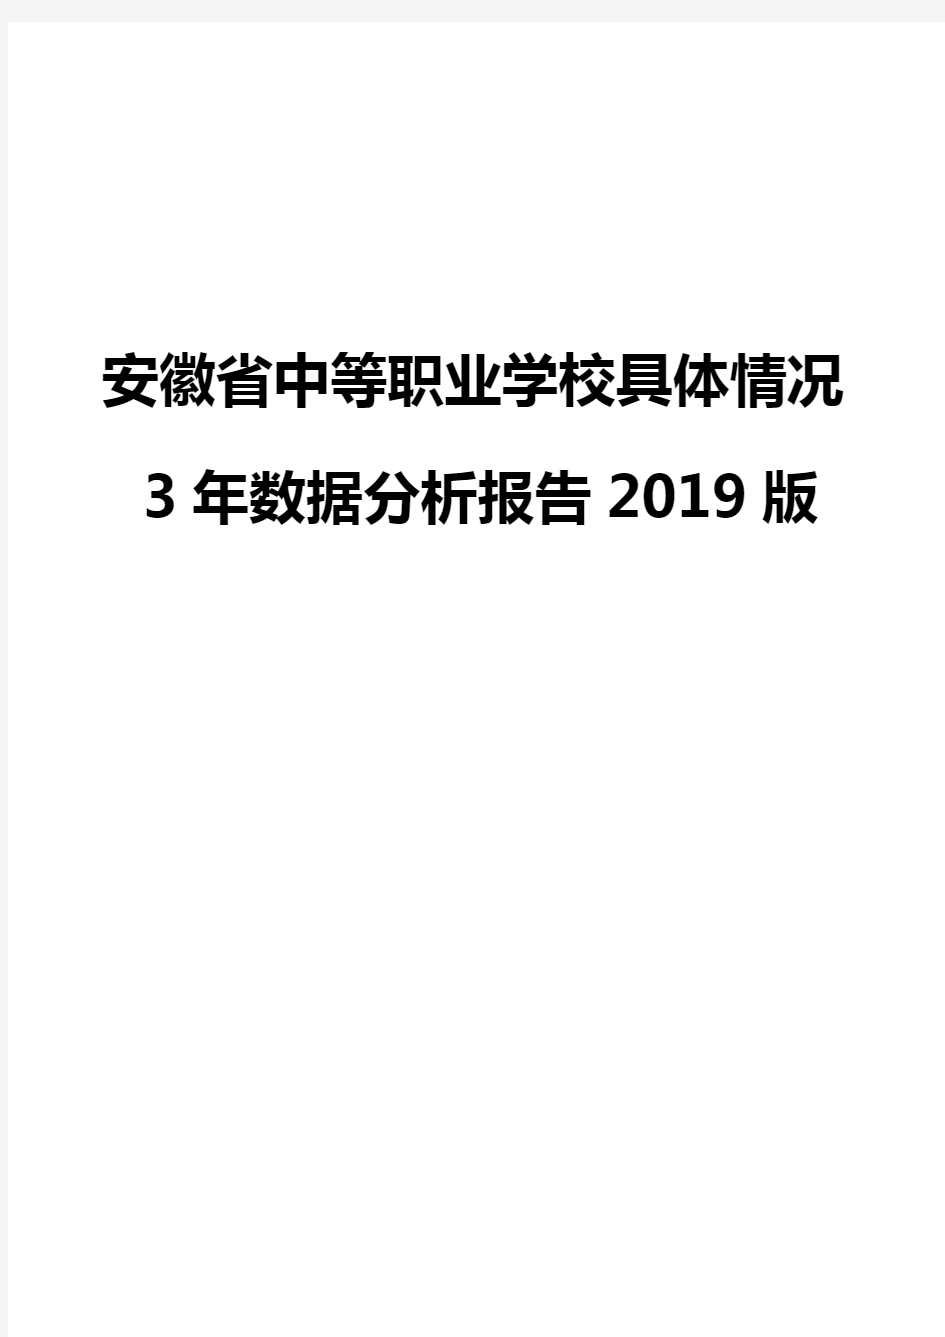 安徽省中等职业学校具体情况3年数据分析报告2019版